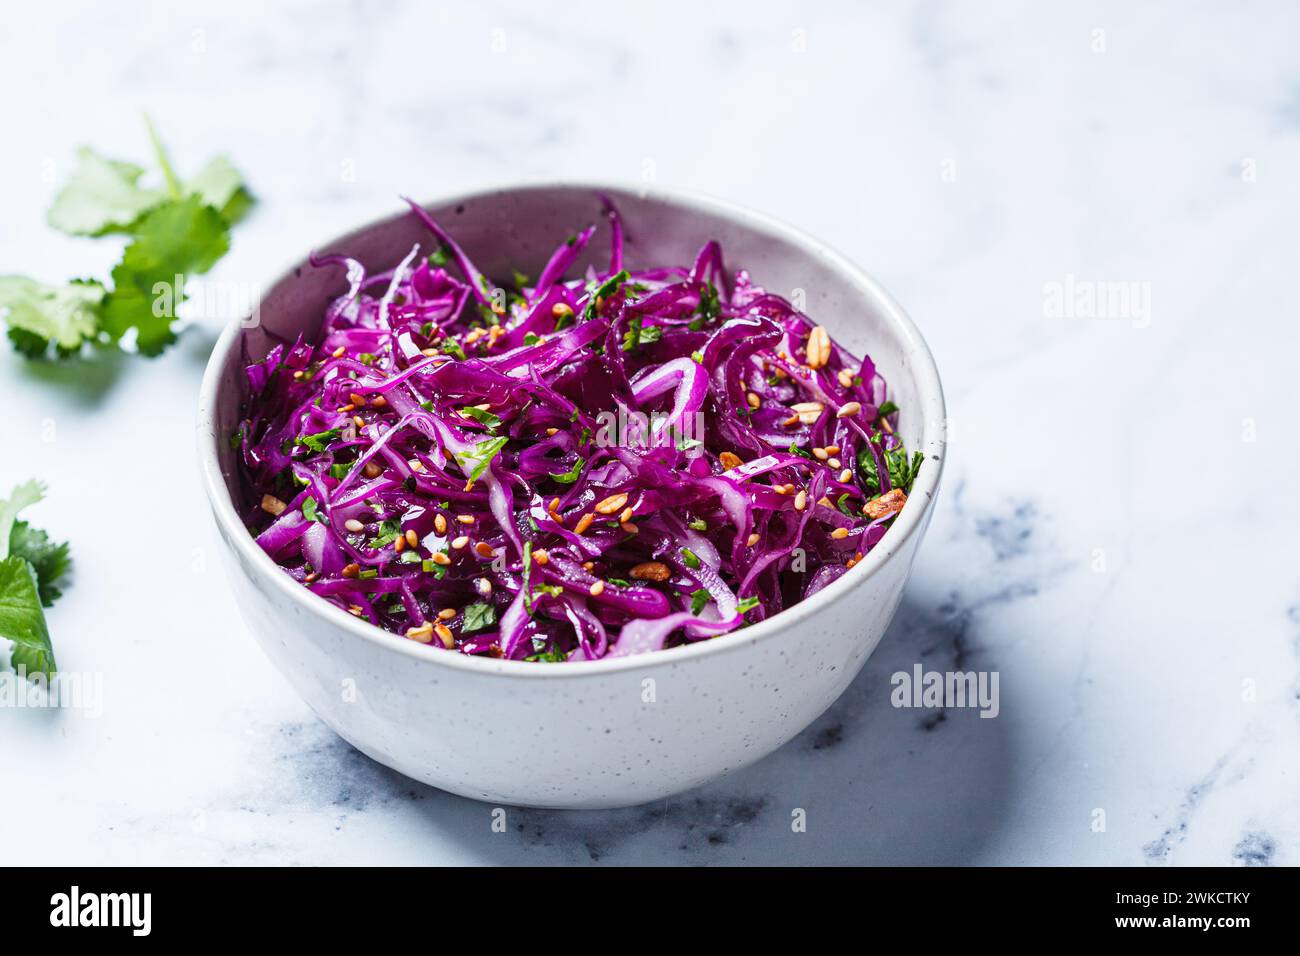 Salade de coleslaw violette avec coriandre et noix. Recette de détox végétalienne. Banque D'Images